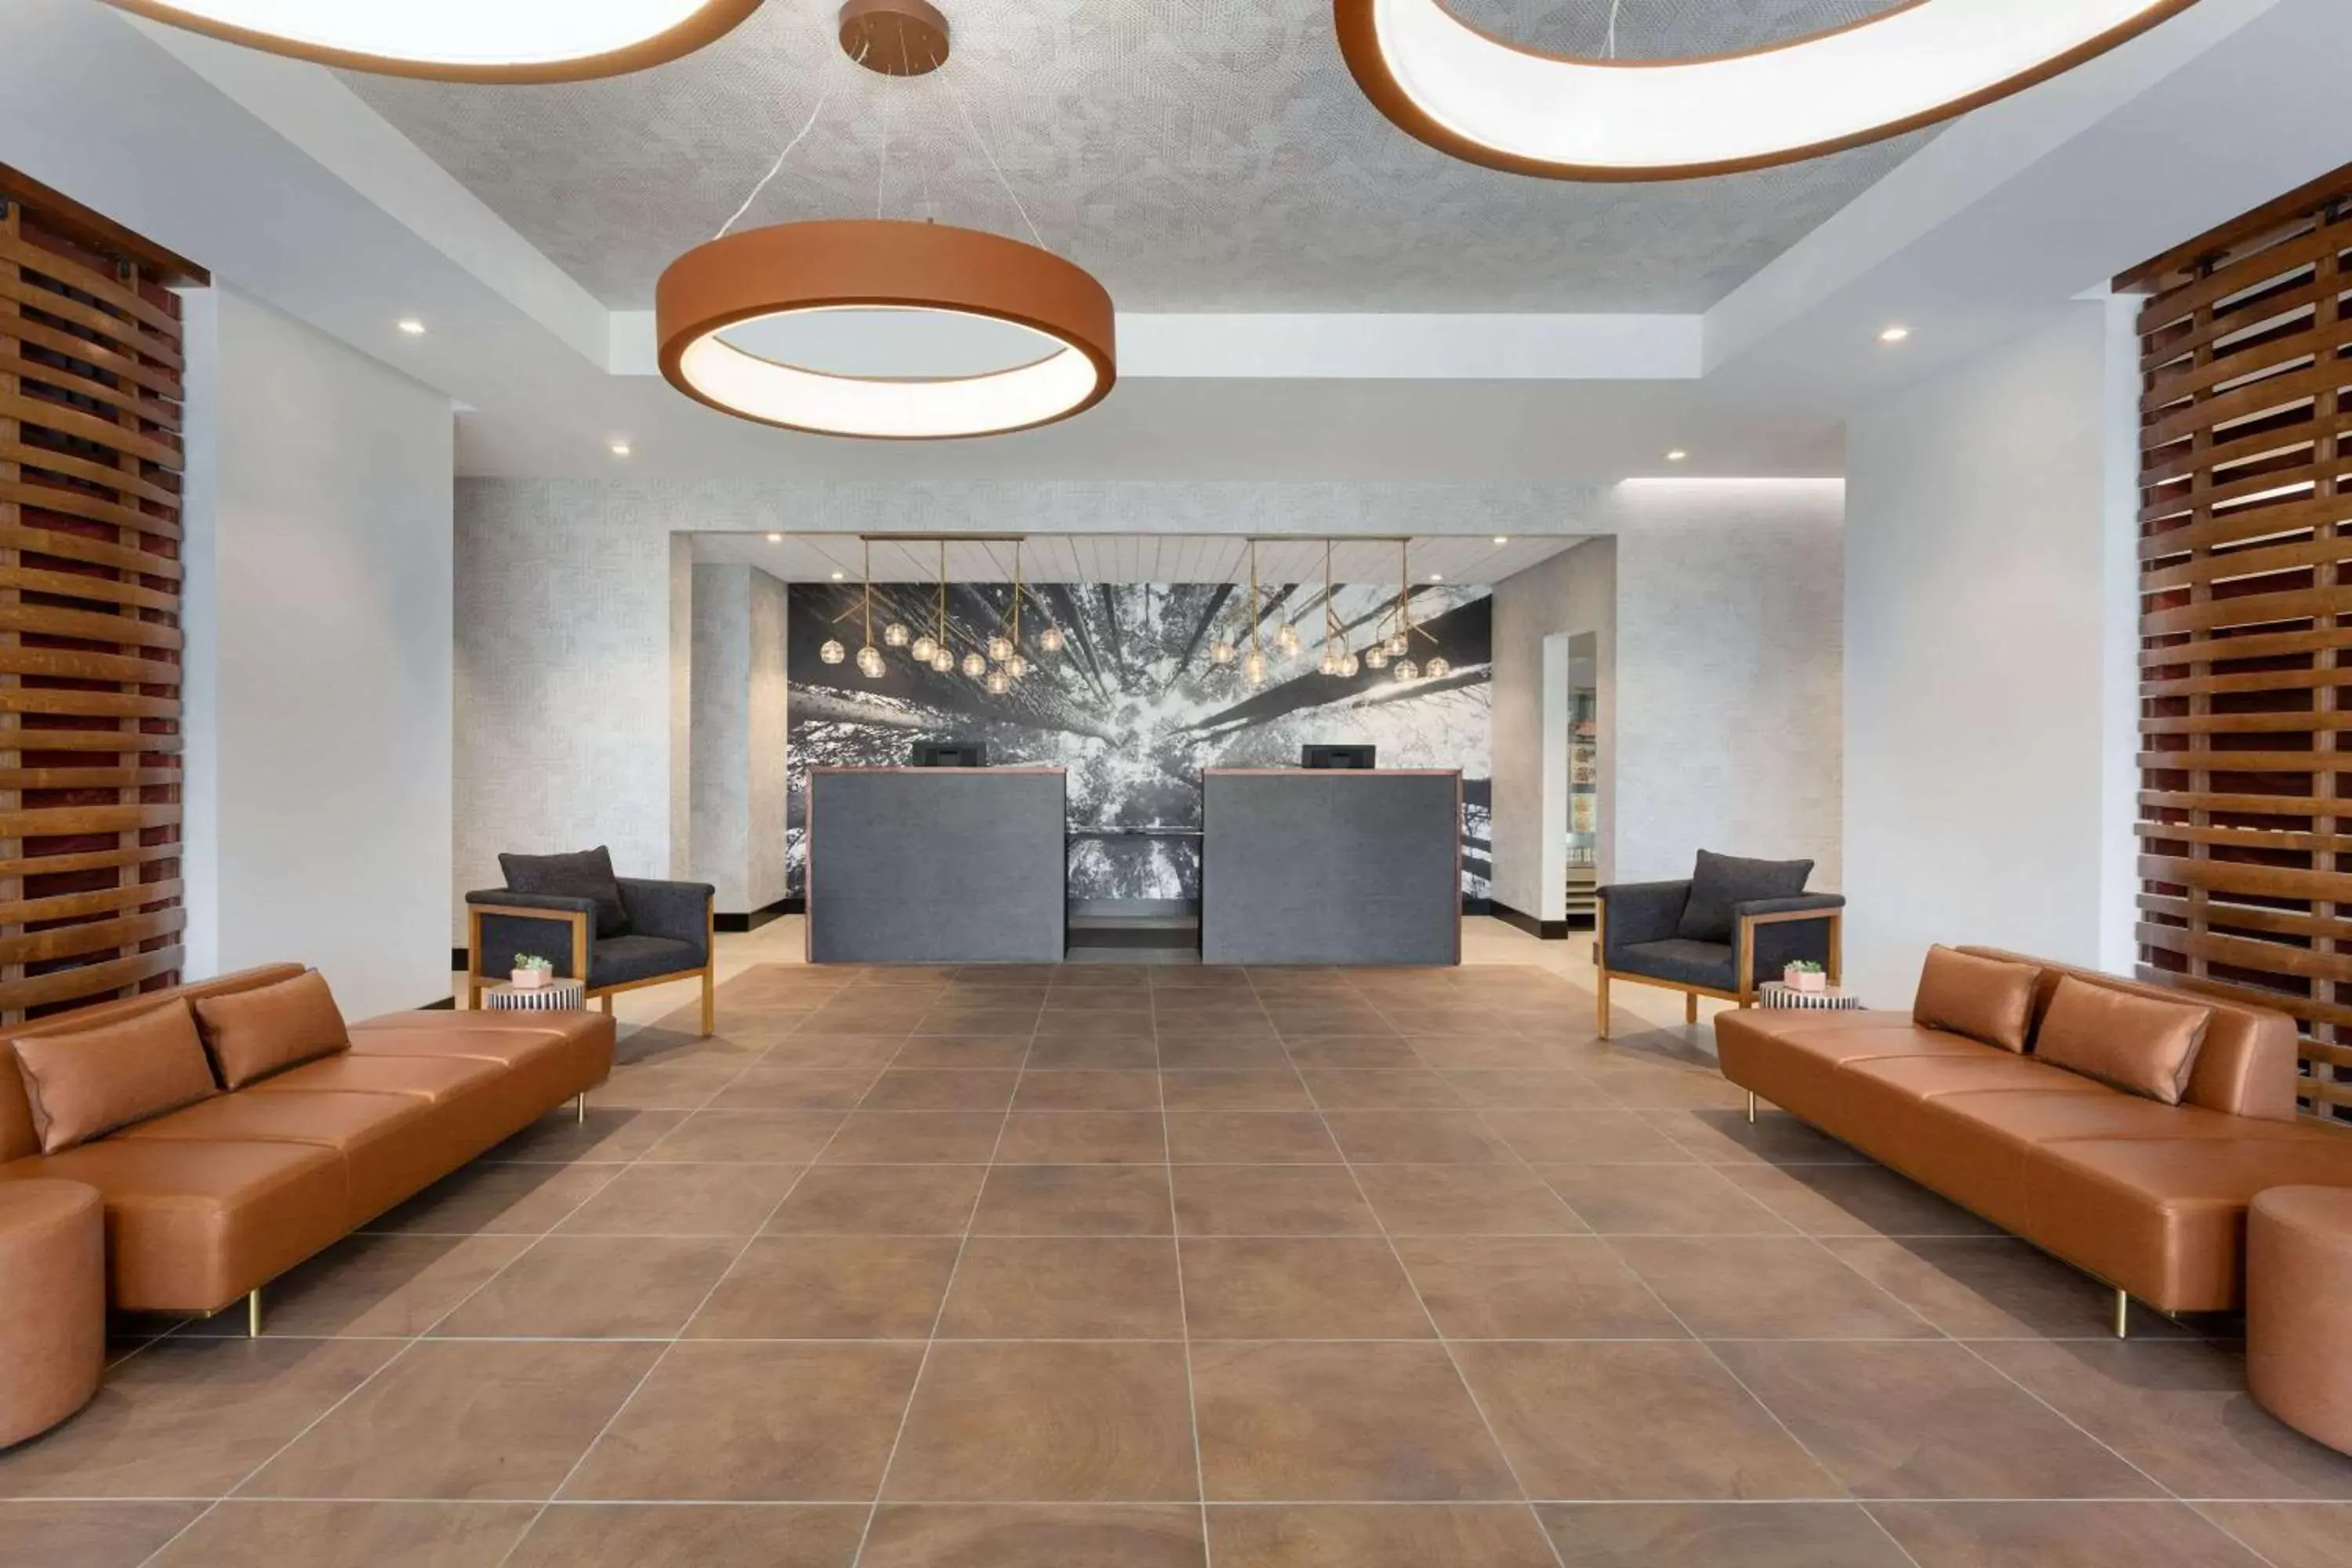 Lobby or reception, Lobby/Reception in La Quinta Inn & Suites by Wyndham Santa Rosa Sonoma